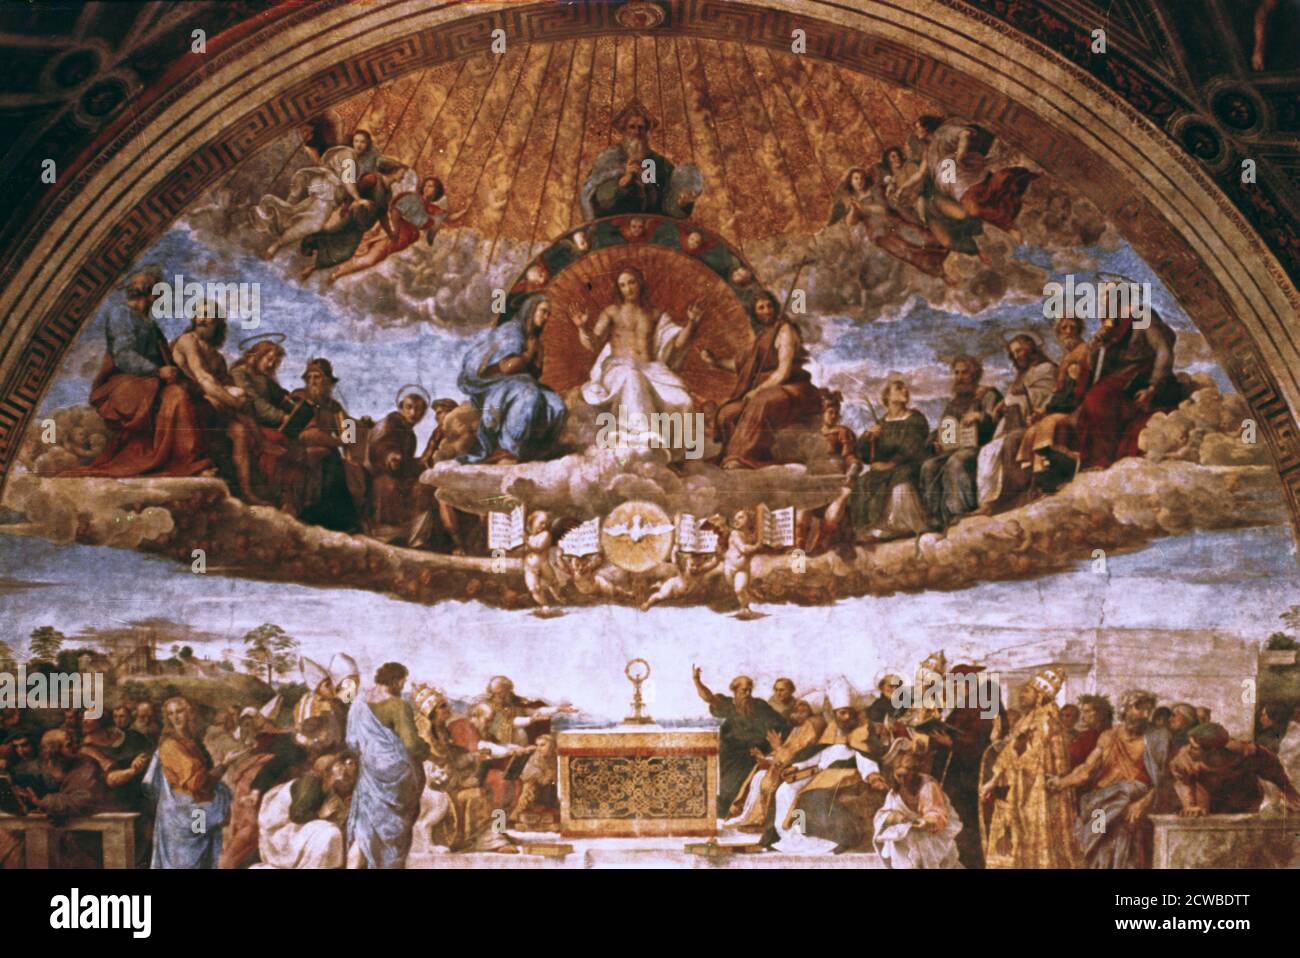 Die Disputation über das Heilige Sakrament', 1508-1509. Künstler: Raphael. Raphael (1483-1520) war ein italienischer Maler und Architekt der Hochrenaissance. Seine Arbeit wird für seine Klarheit der Form, Leichtigkeit der Komposition und visuelle Leistung der menschlichen Größe bewundert. Stockfoto